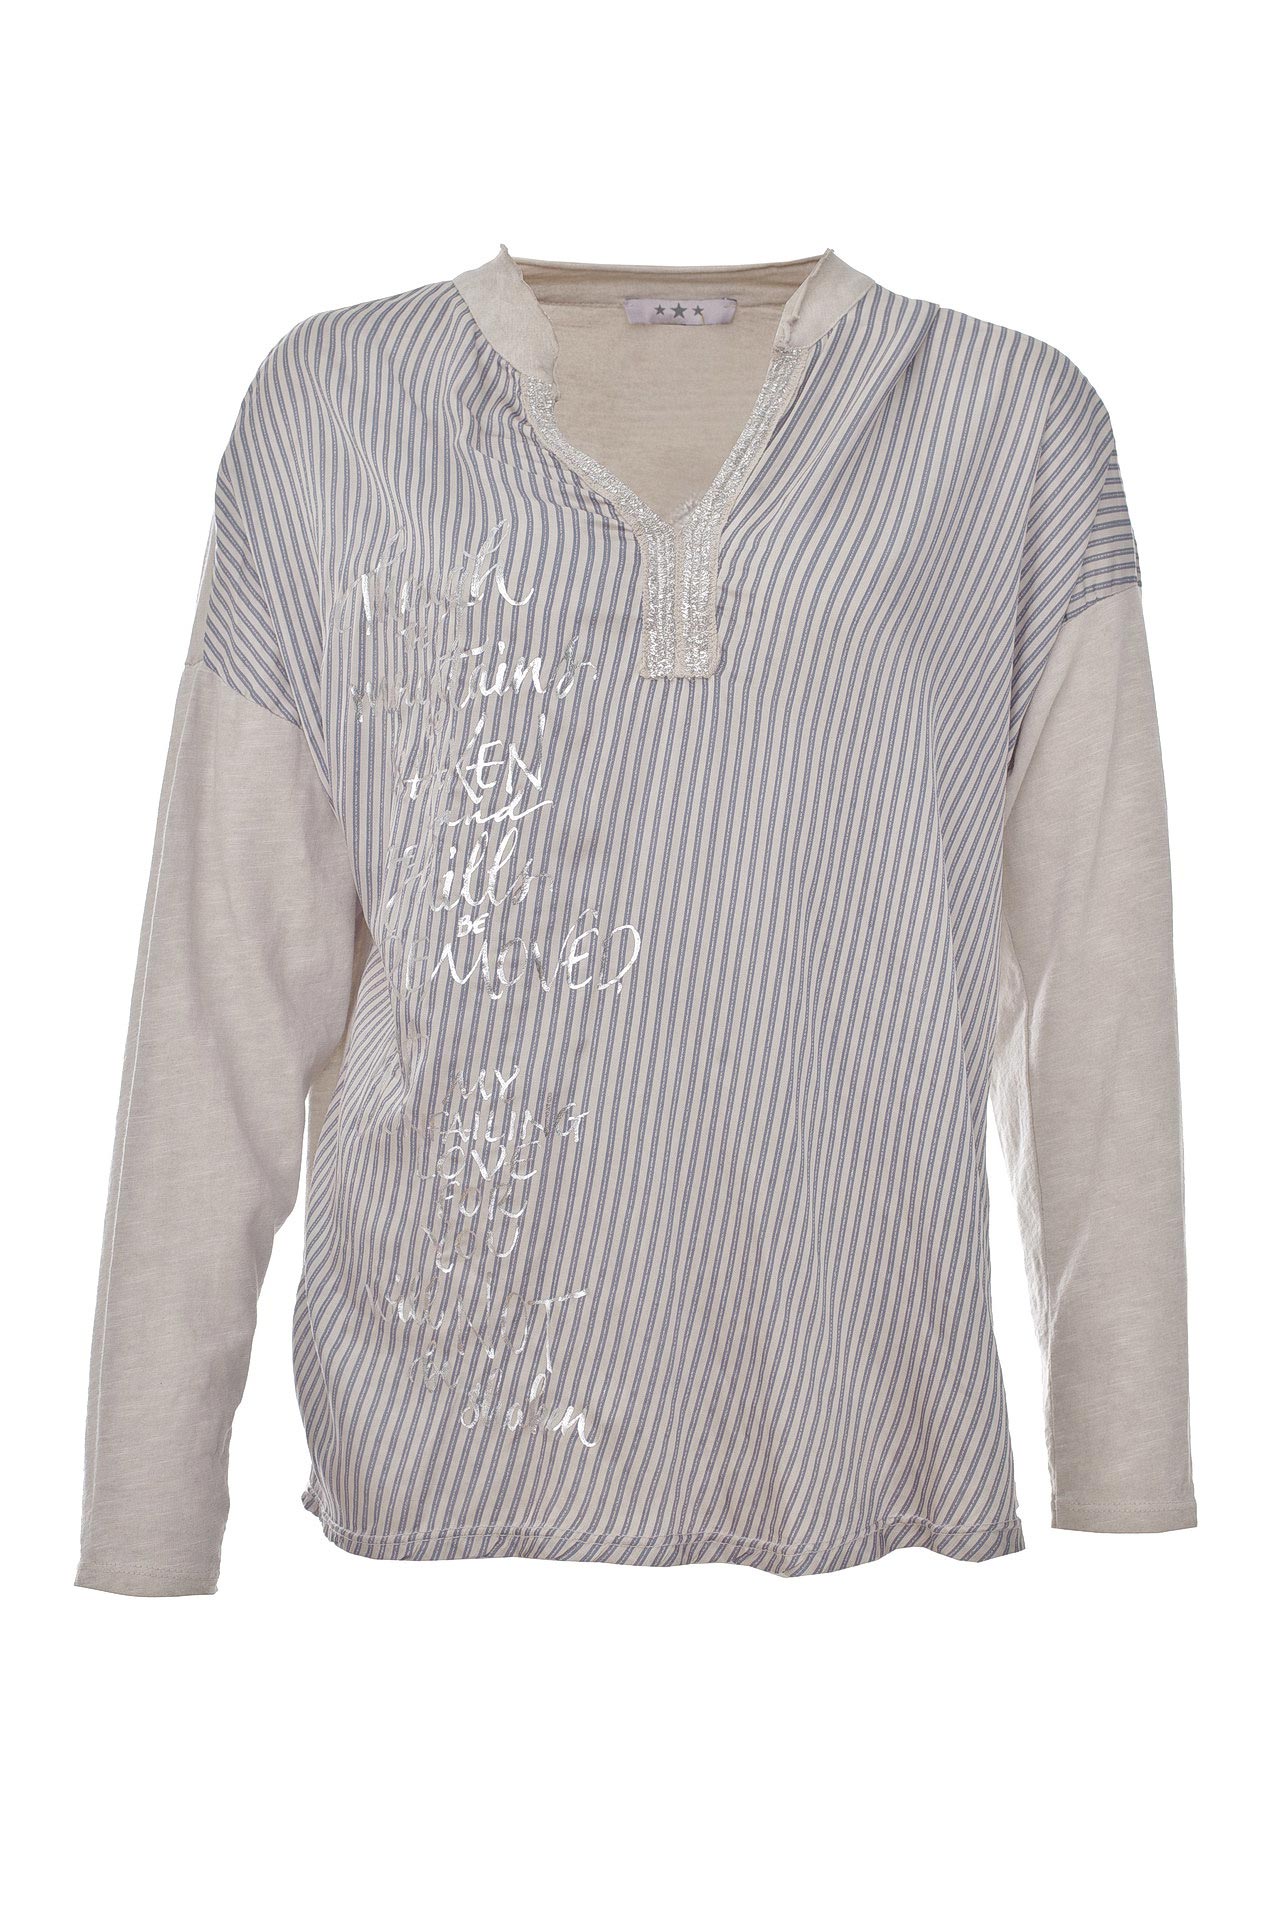 Одежда женская Рубашка INTREND21 (JL8166Z112/18.1). Купить за 3900 руб.